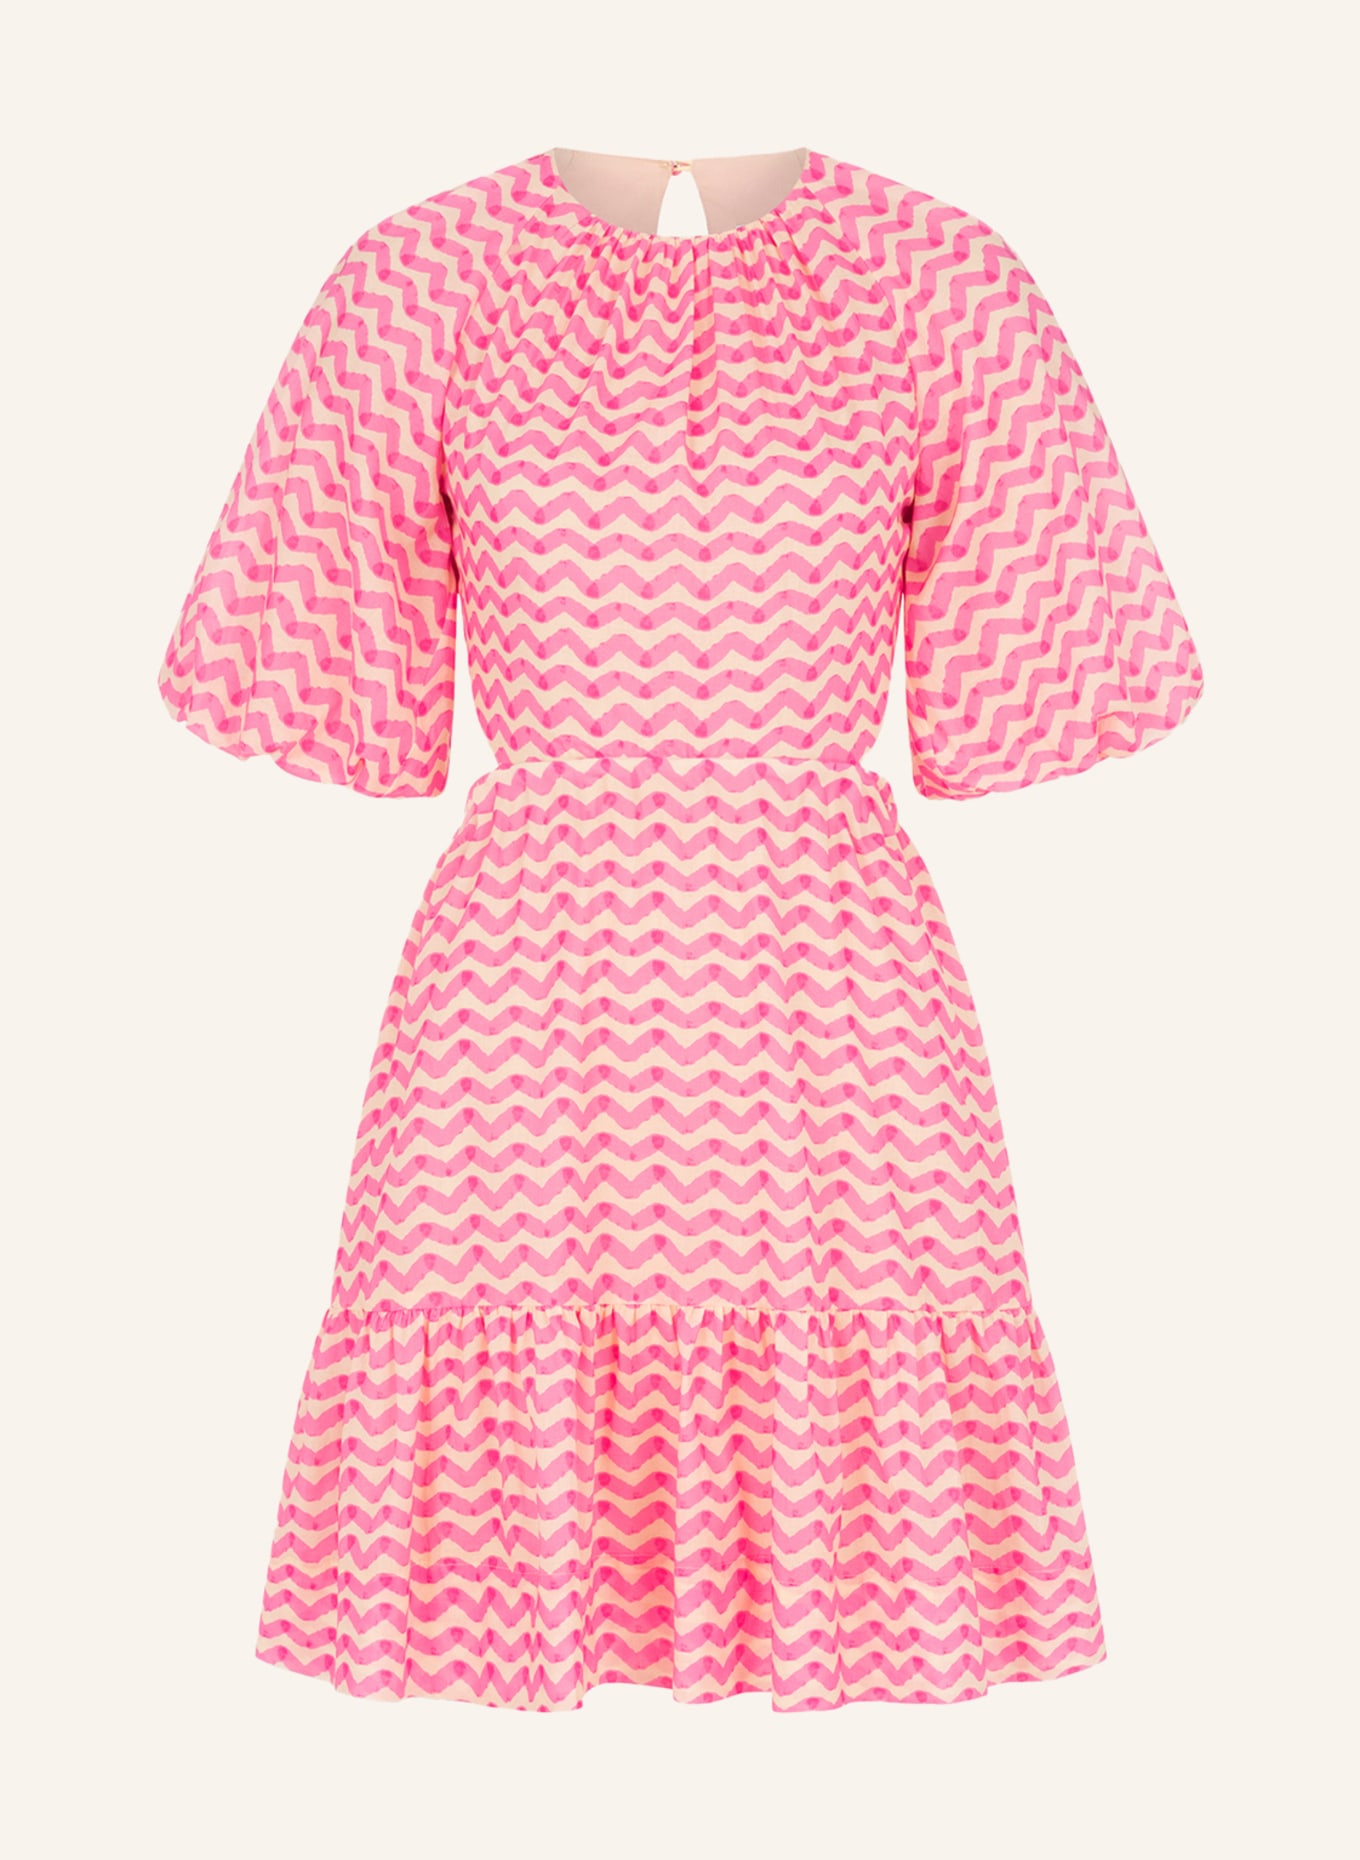 CLAIRE LUISE Kleid, Farbe: PINK (Bild 1)